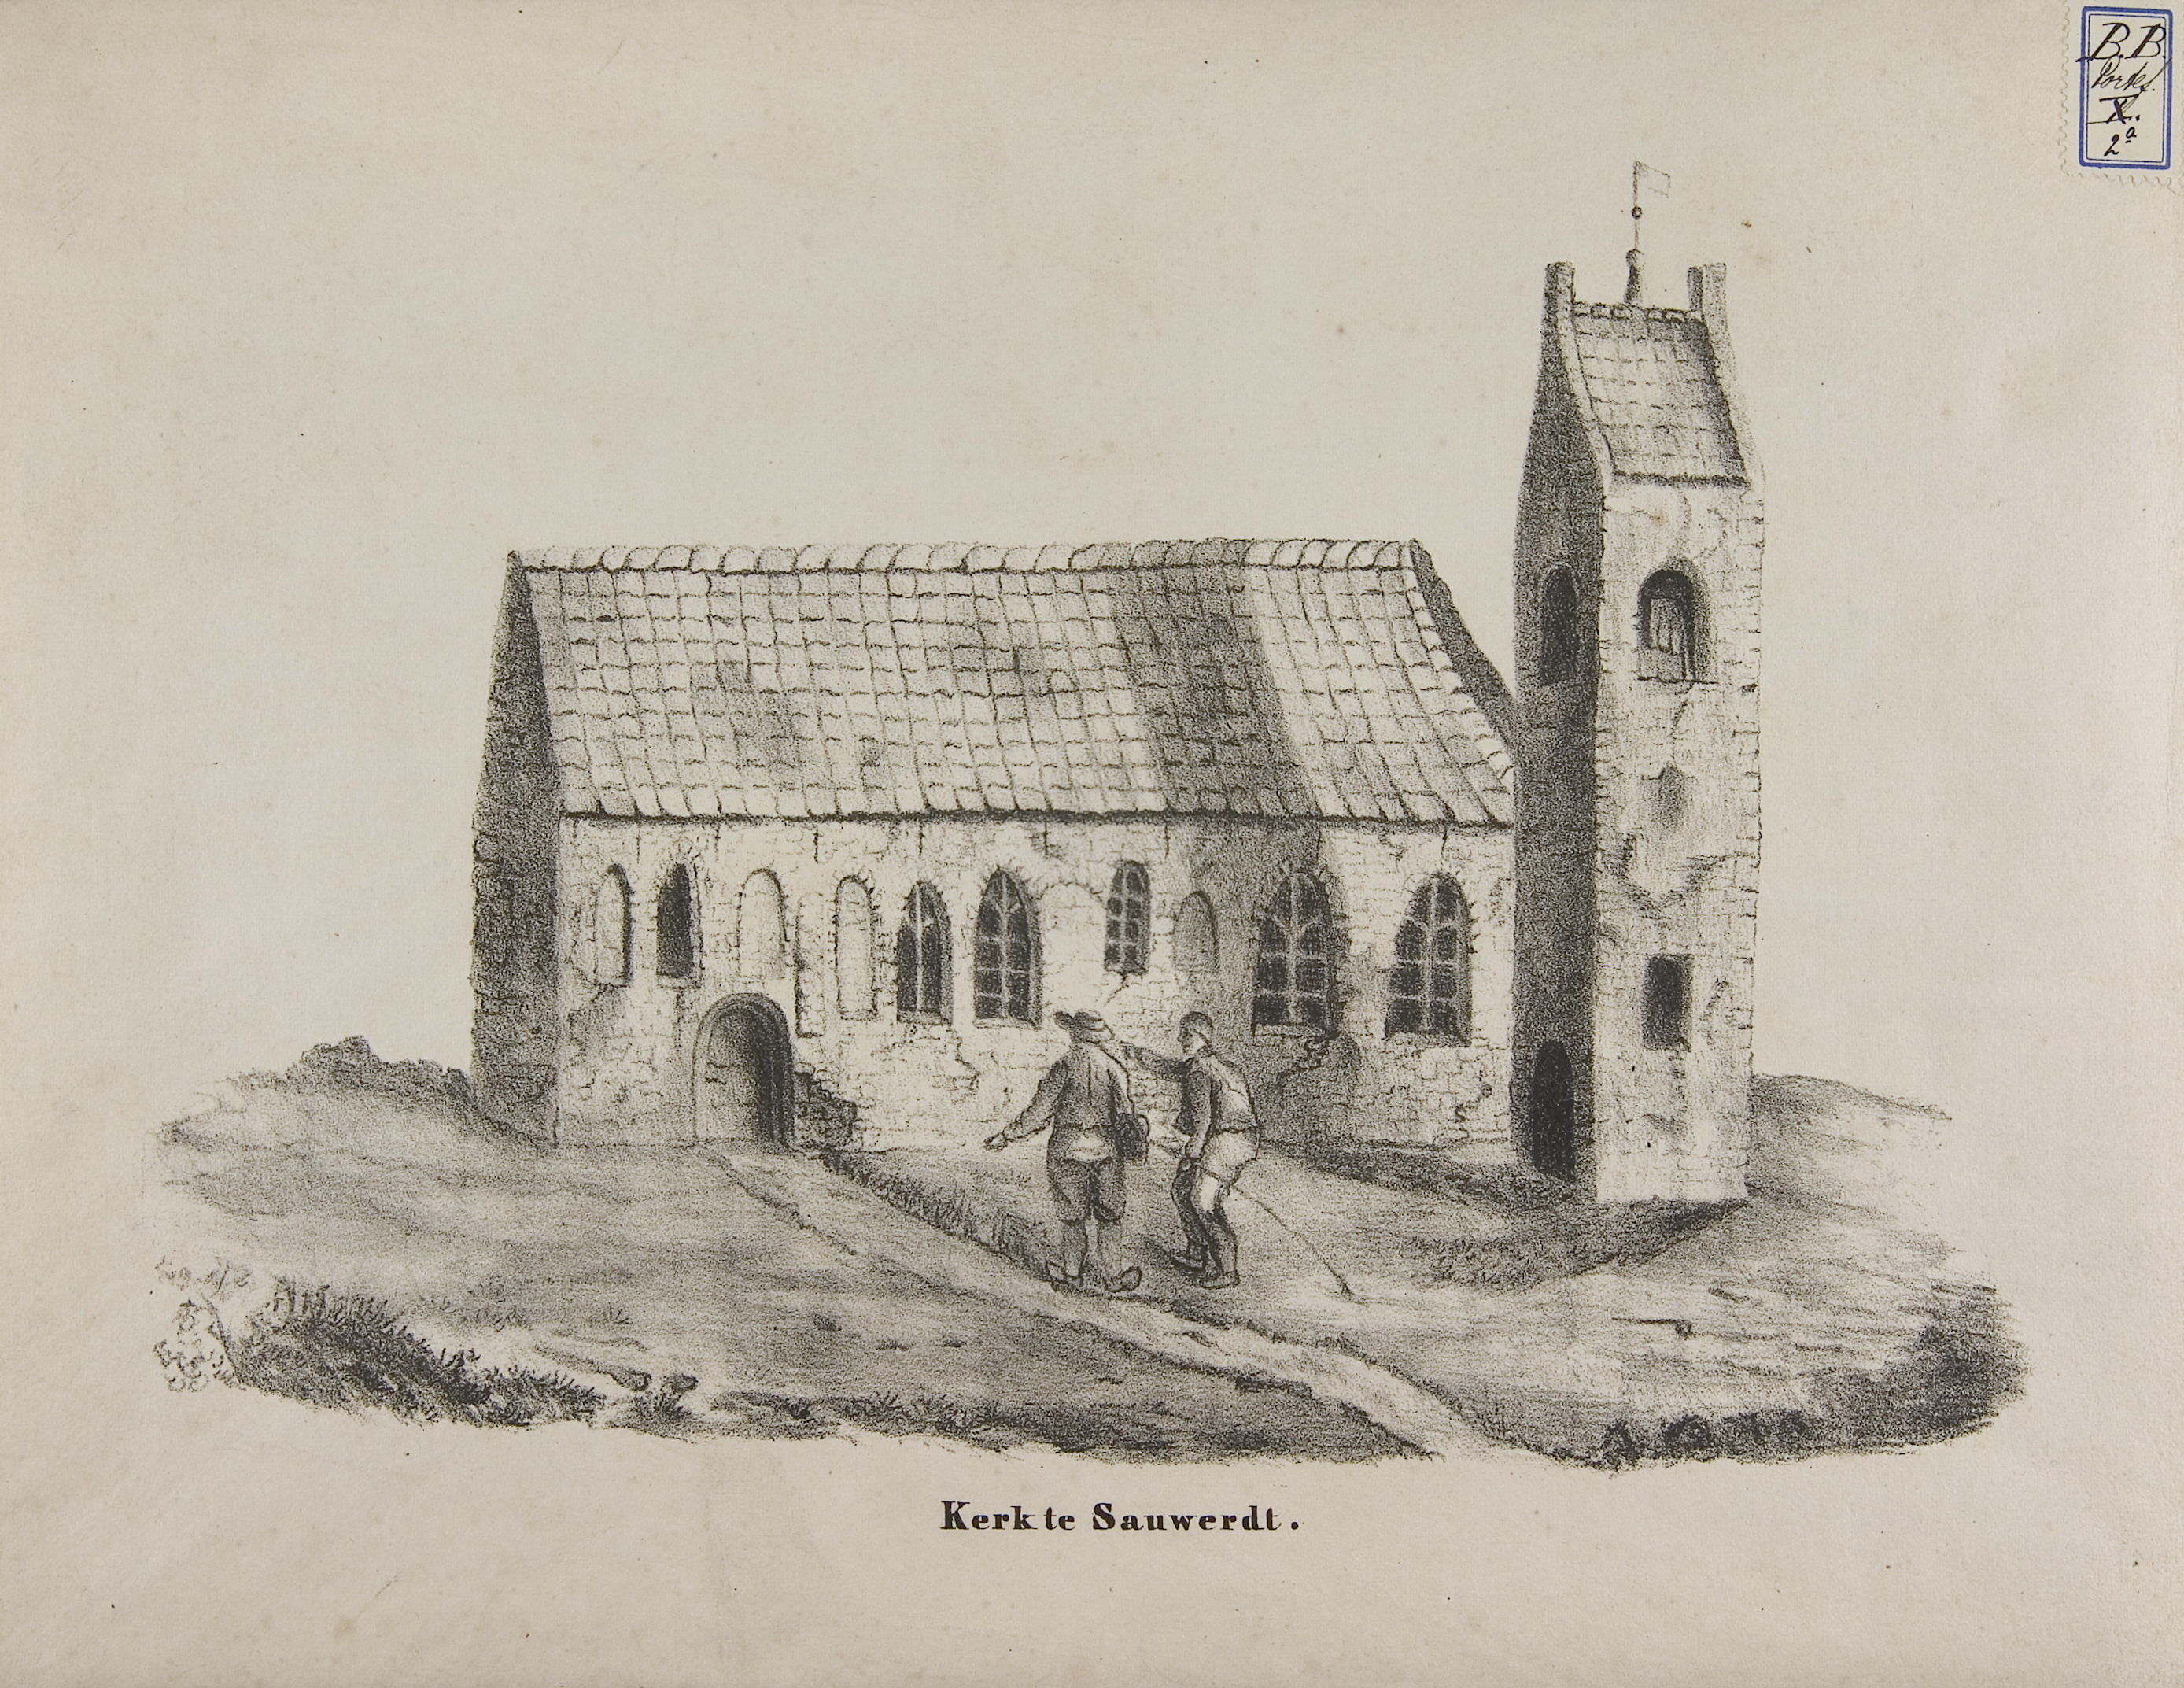 De in 1840 afgebroken kerk van Sauwerd op een oude steendruk uit ca. 1840. Tot 1840 heeft er in het dorp een middeleeuwse kerk gestaan. Deze is in dat jaar wegens bouwvalligheid gesloopt. Tegelijkertijd wordt ook de kerk in Groot-Wetsinge gesloopt. Voor beide dorpen wordt halverwege, in Klein-Wetsinge een nieuw kerkje gebouwd. De plaats van de voormalige kerk wordt gemarkeerd